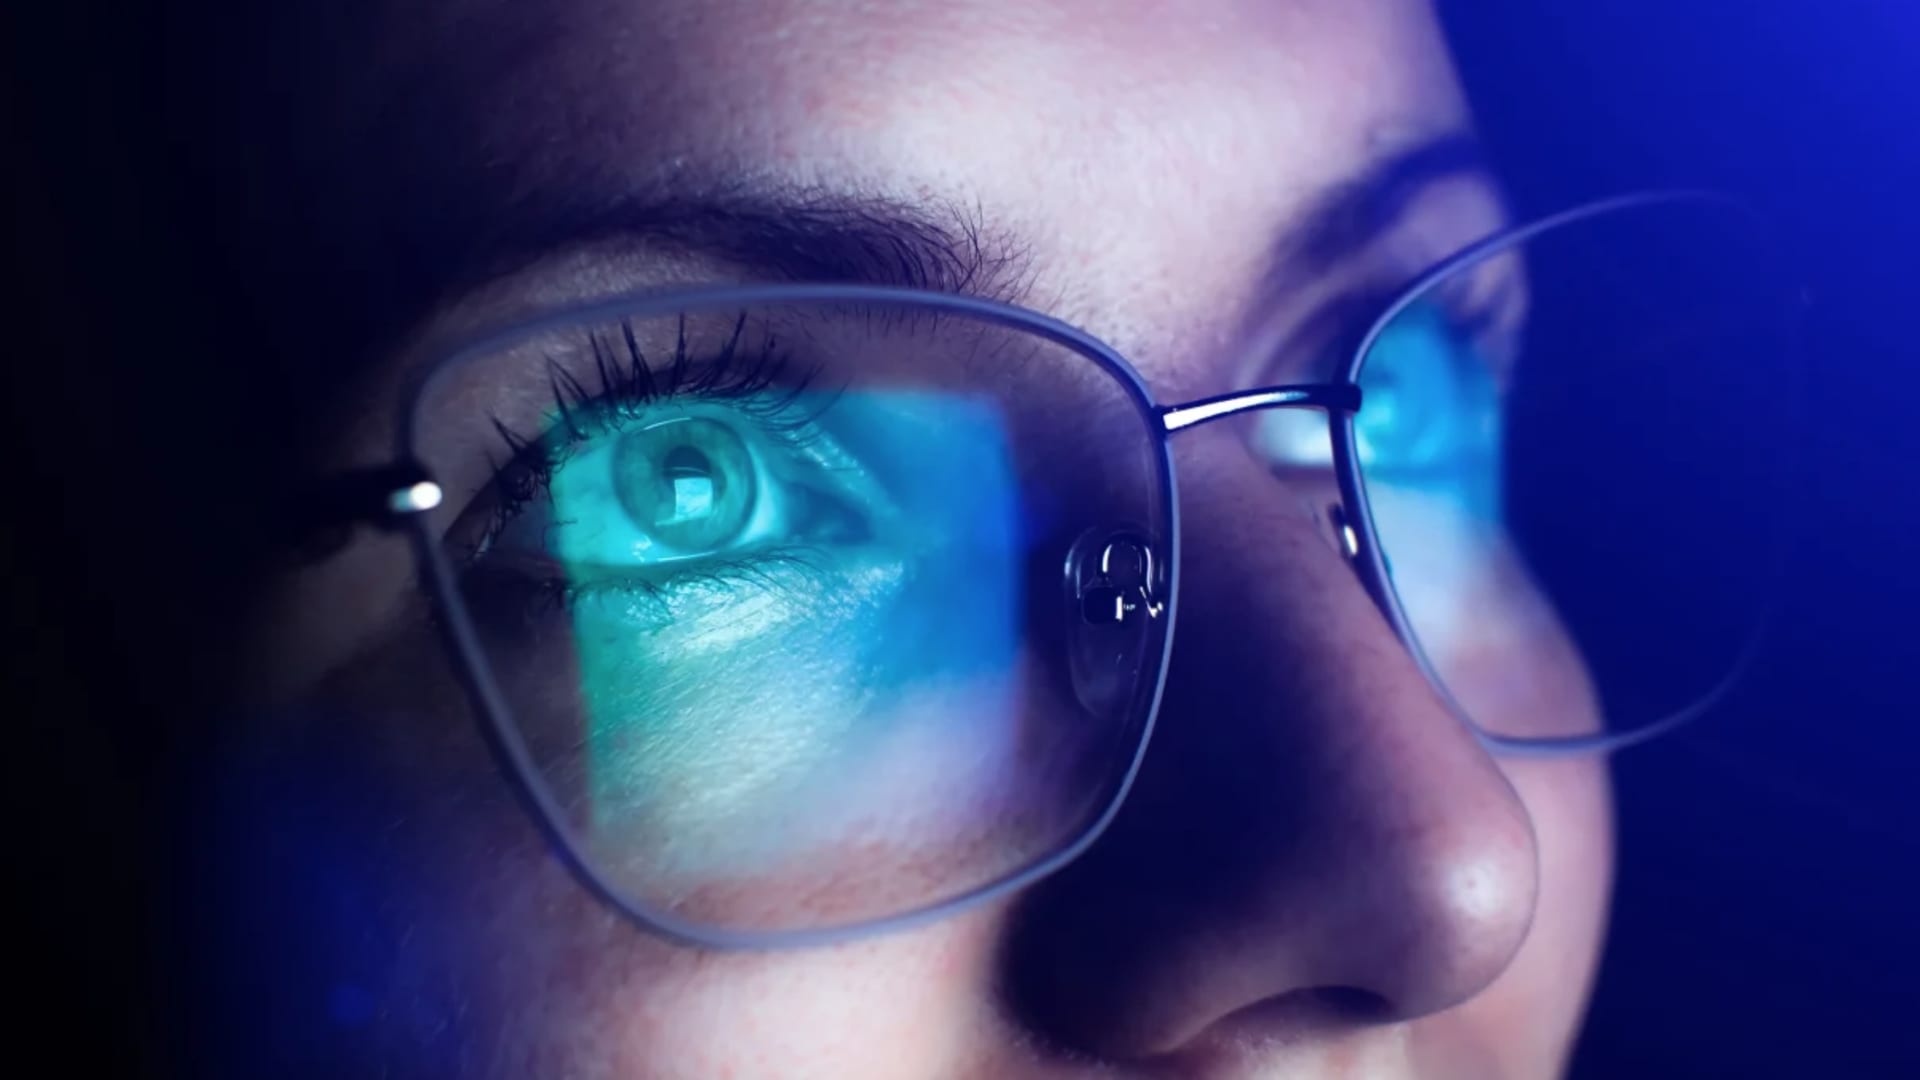 نظارات الضوء الأزرق تقلل من إجهاد العين وتساعد على النوم